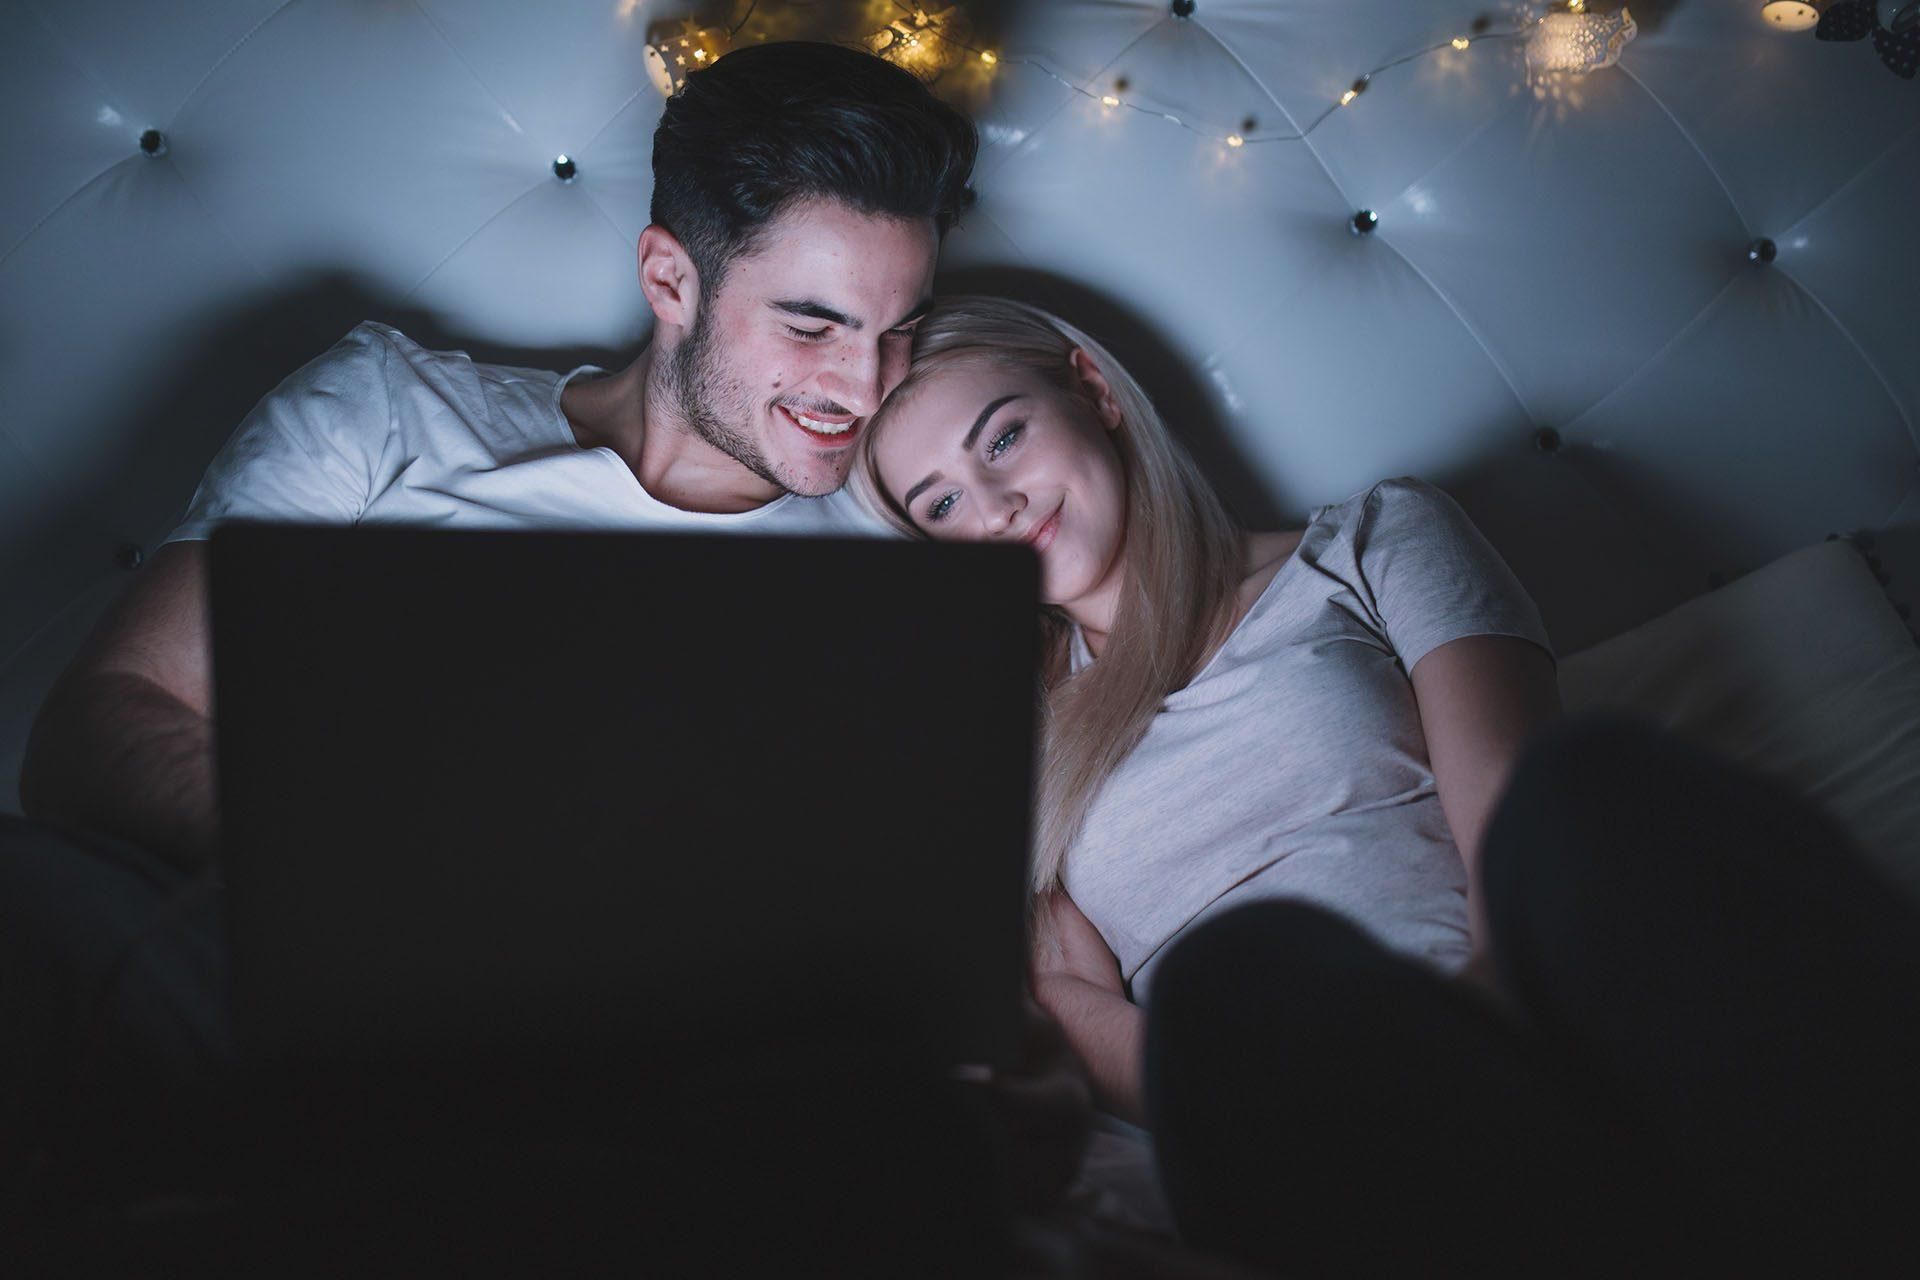 Стоит ли смотреть порно вместе с партнером - Здоровье 24